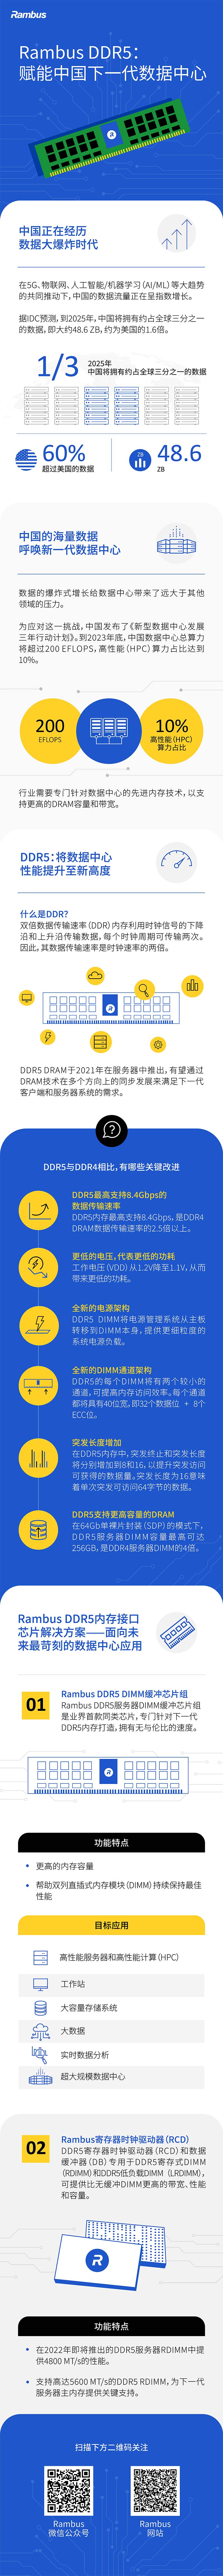 了解 DDR4 和 DDR5 之间的主要区别，以及 DDR5 如何为中国下一代数据中心的性能提供动力。